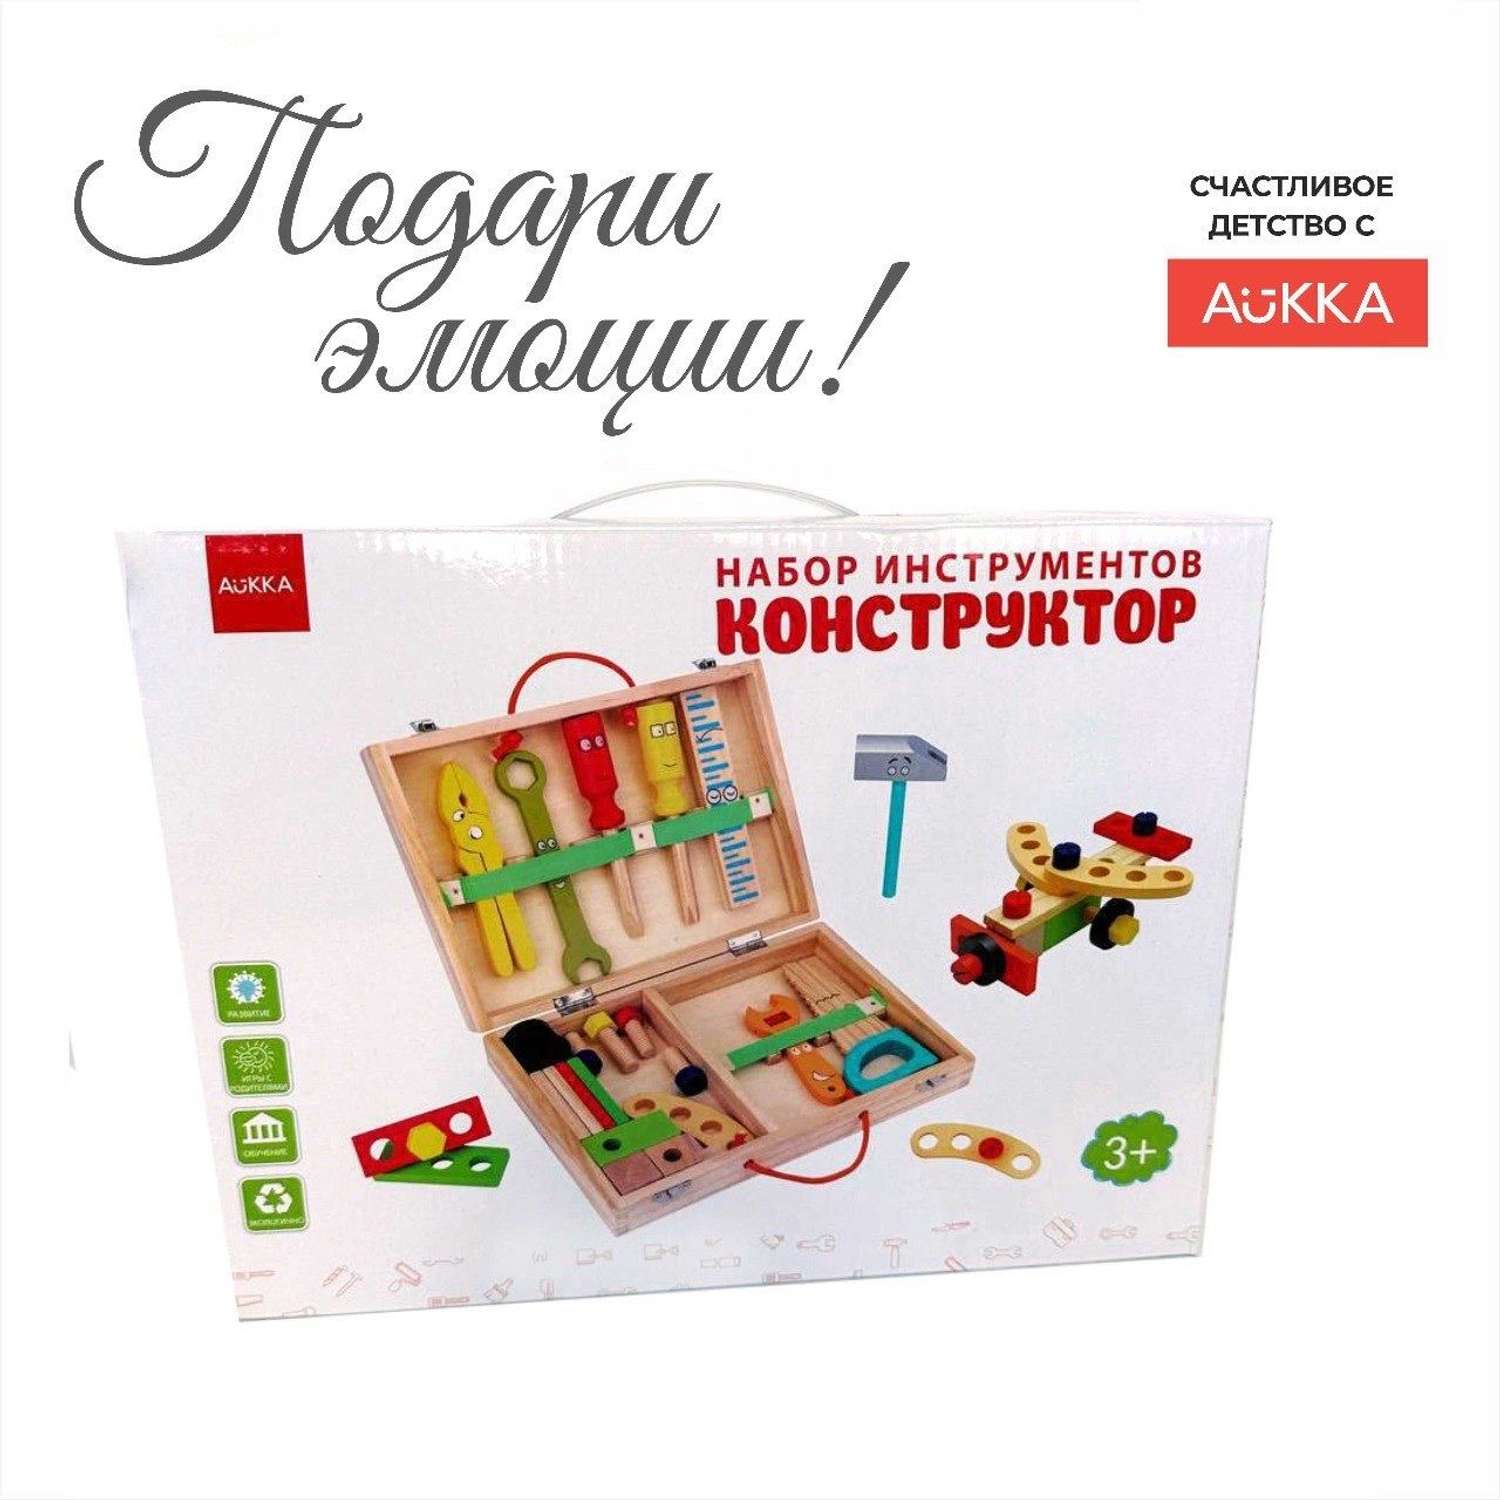 Деревянный конструктор AUKKA Игрушечные строительные иструменты для мальчика - фото 9